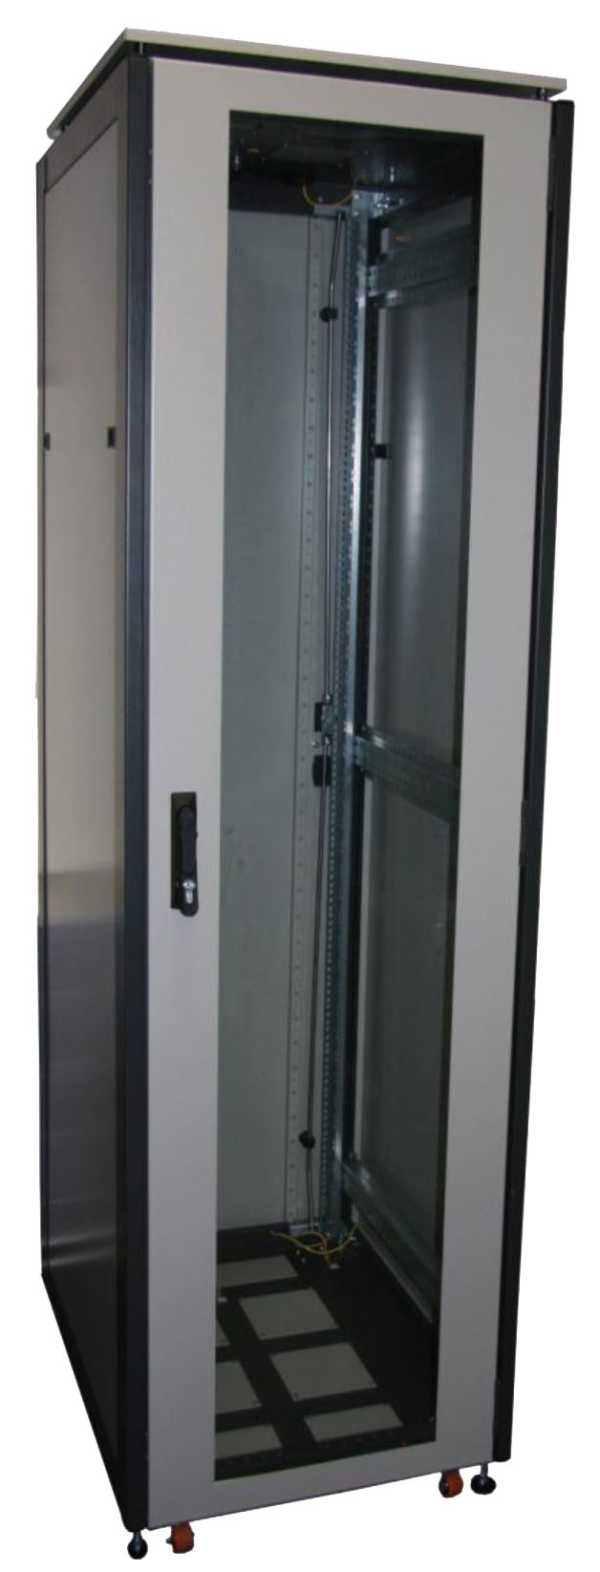 ССКТБ ТОМАСС ШТК-6812Э-00 - шкаф телекоммуникационный 19", 24U, 600х800х1200 мм, с металлической и стеклянной дверью